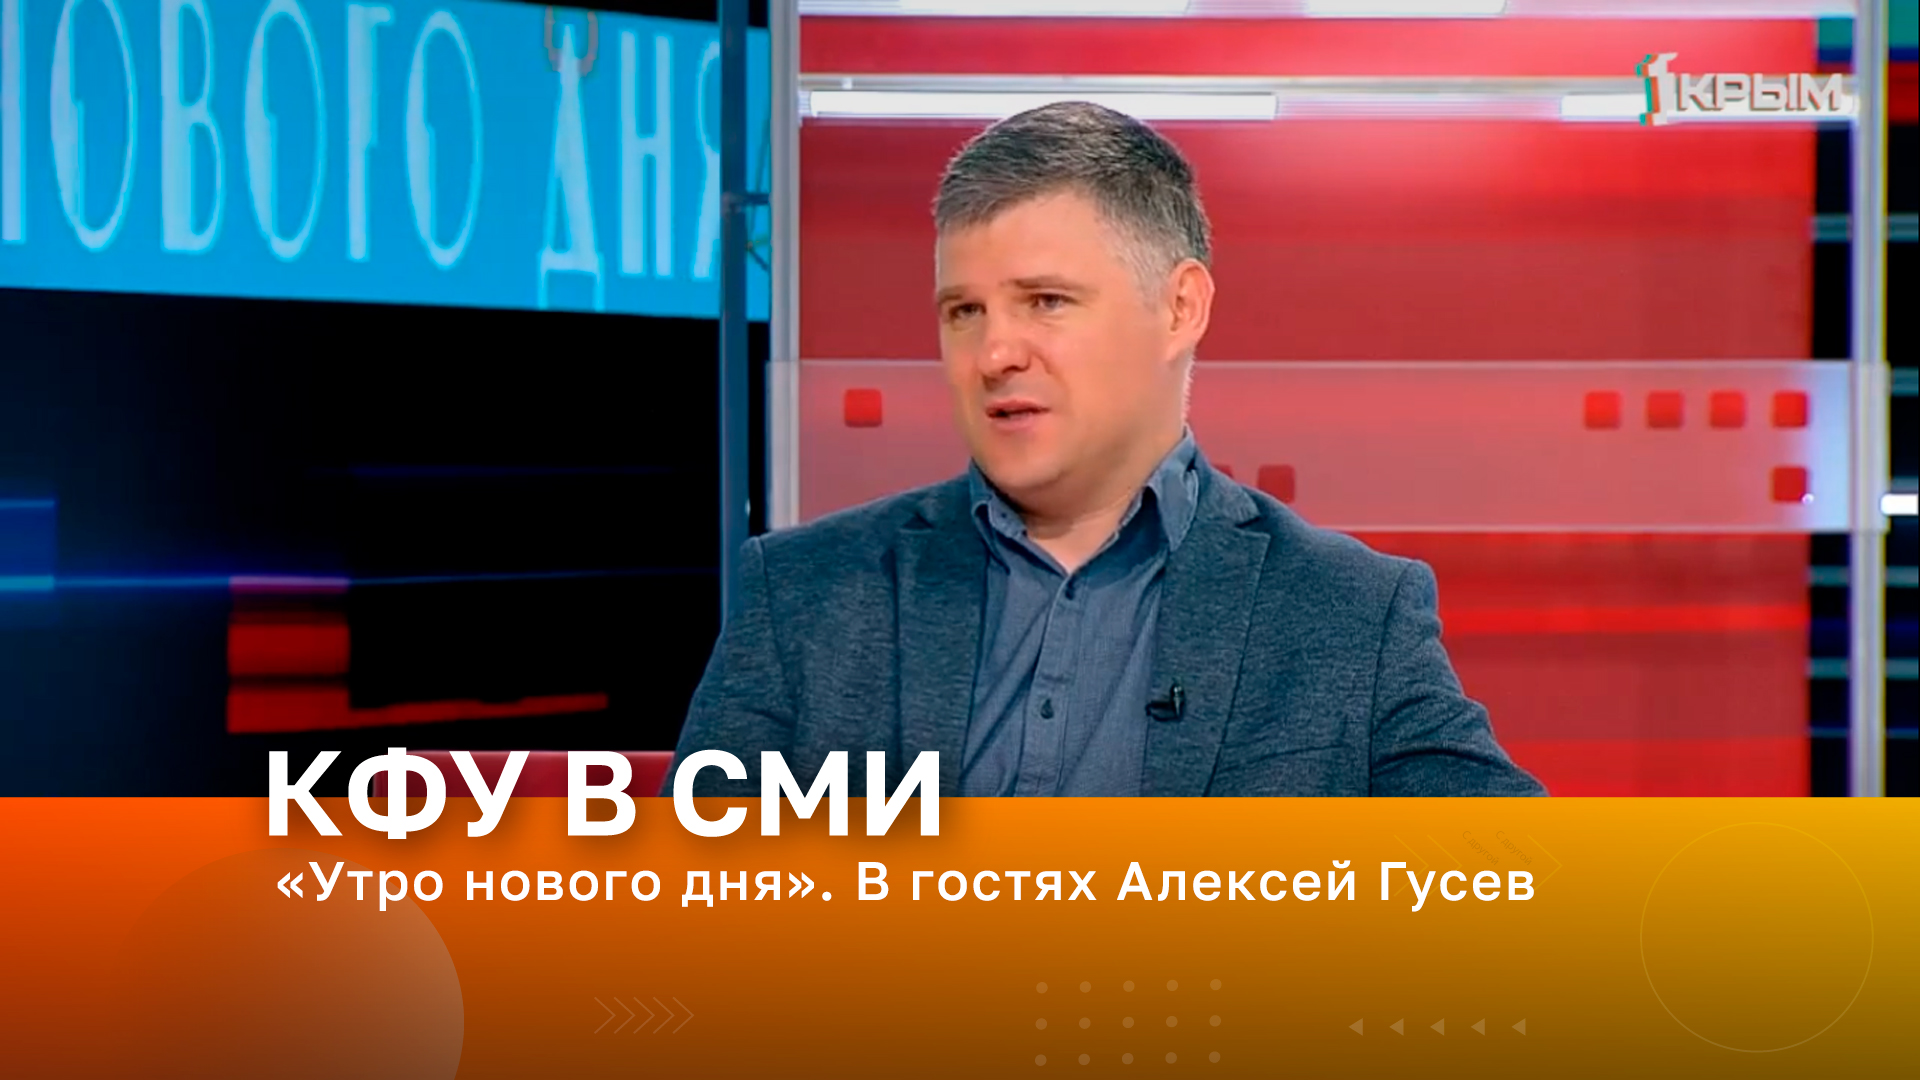 Утро нового дня Крым 24. Ведущий утренних новостей на телеканале Россия 1.